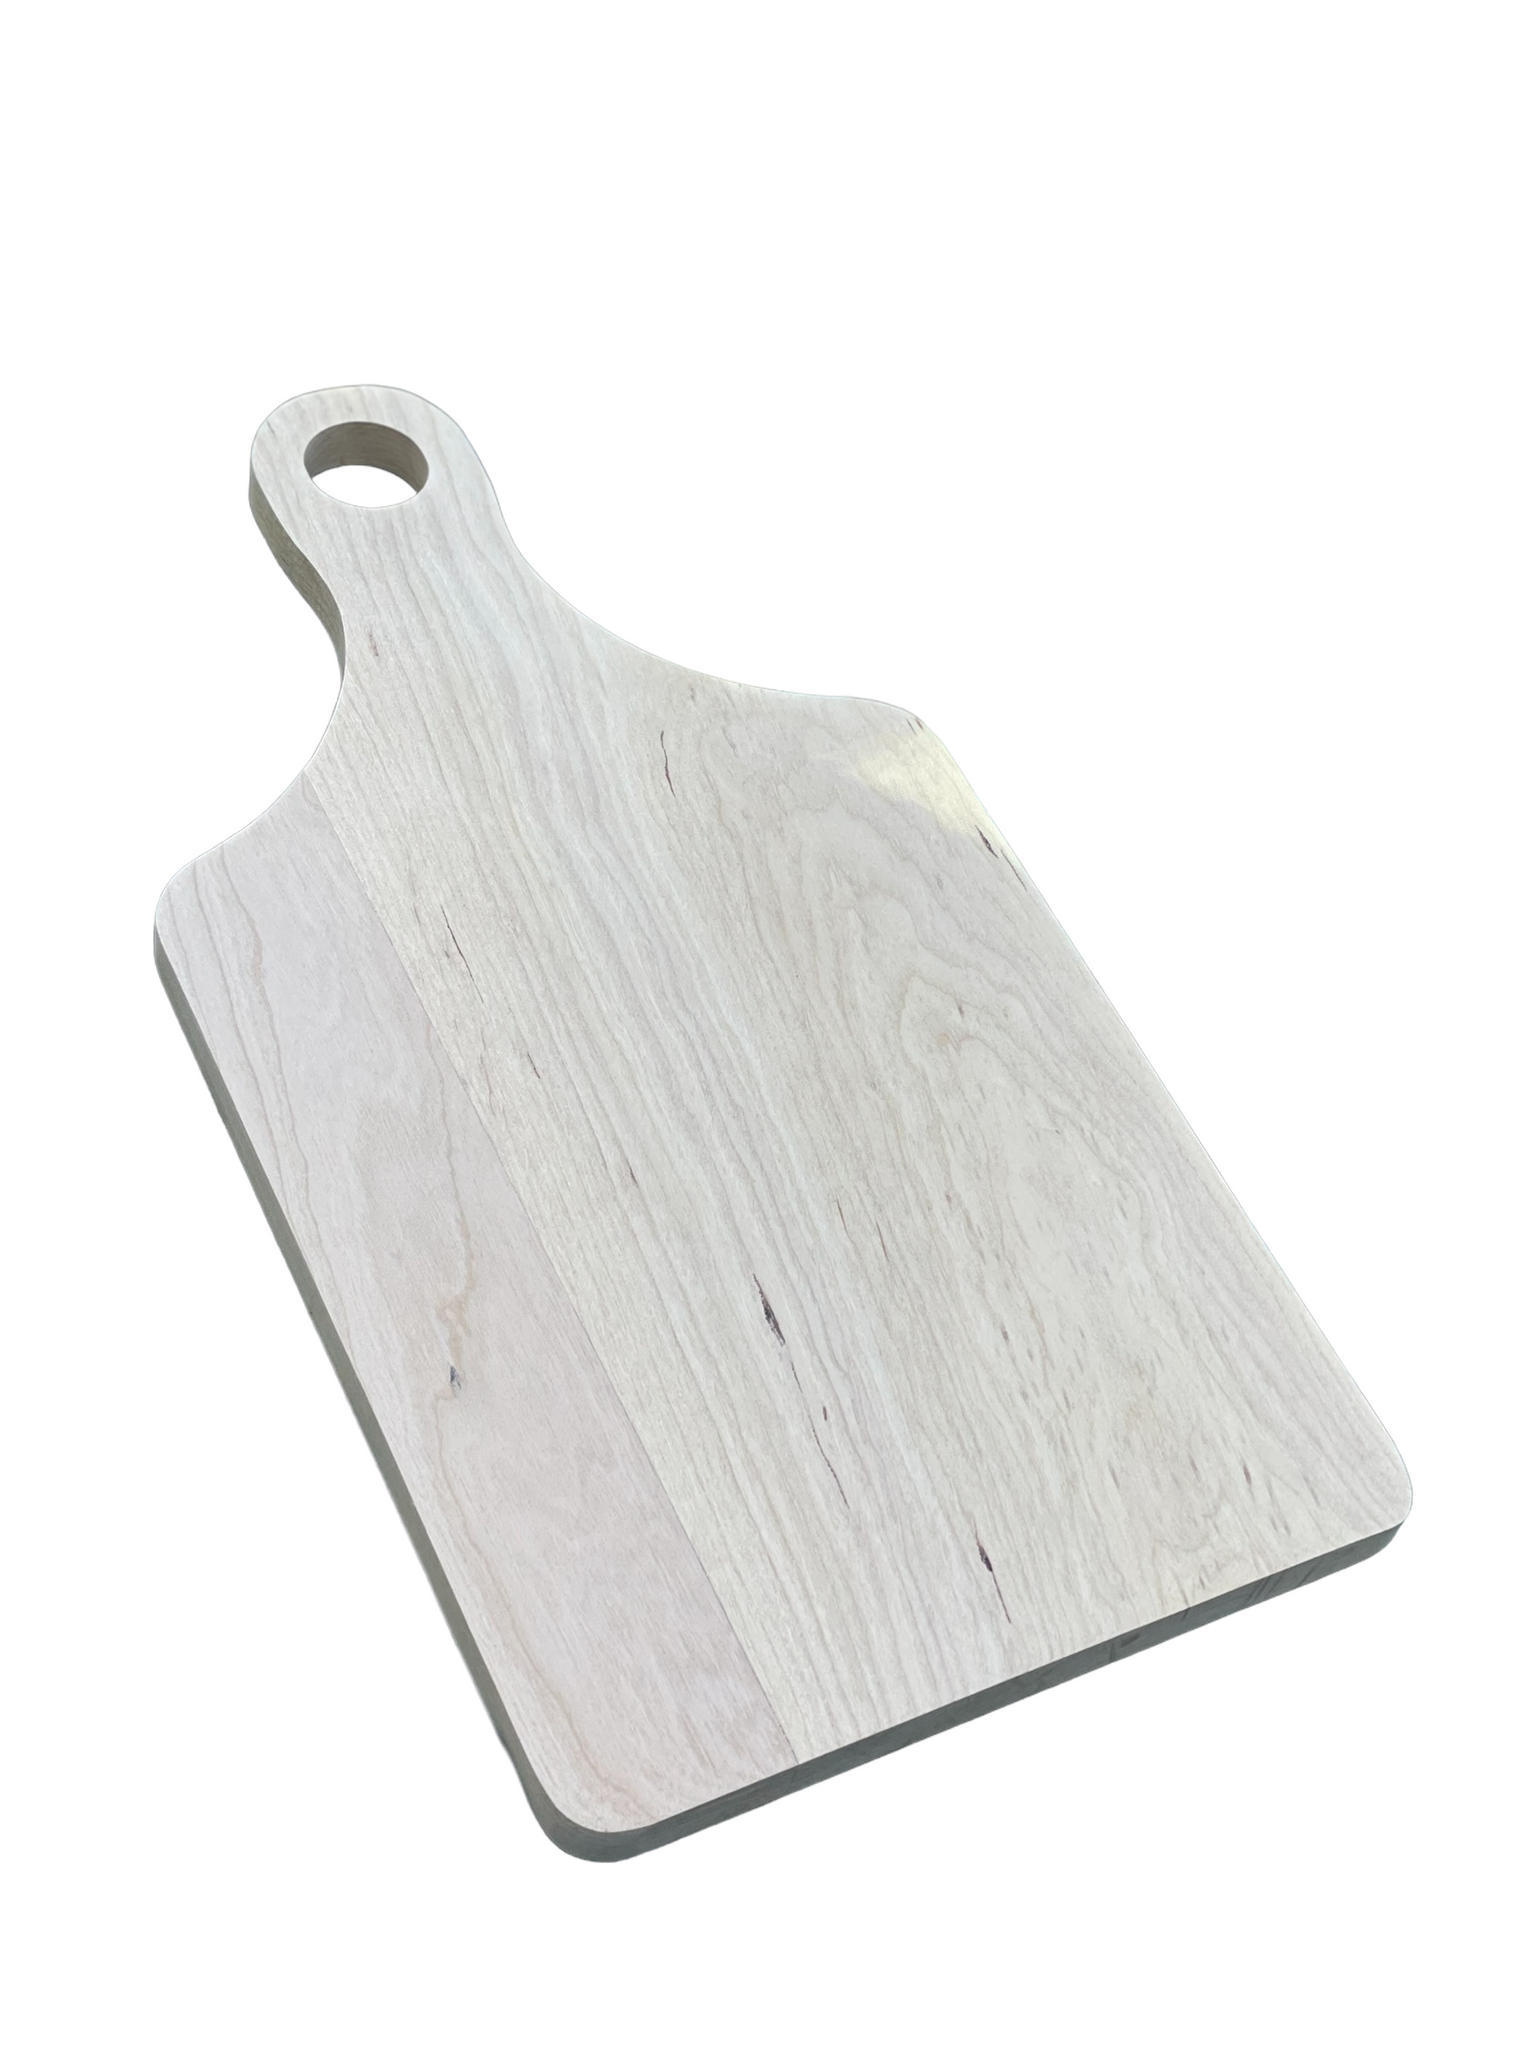 Hardwood Paddle Cutting Board F